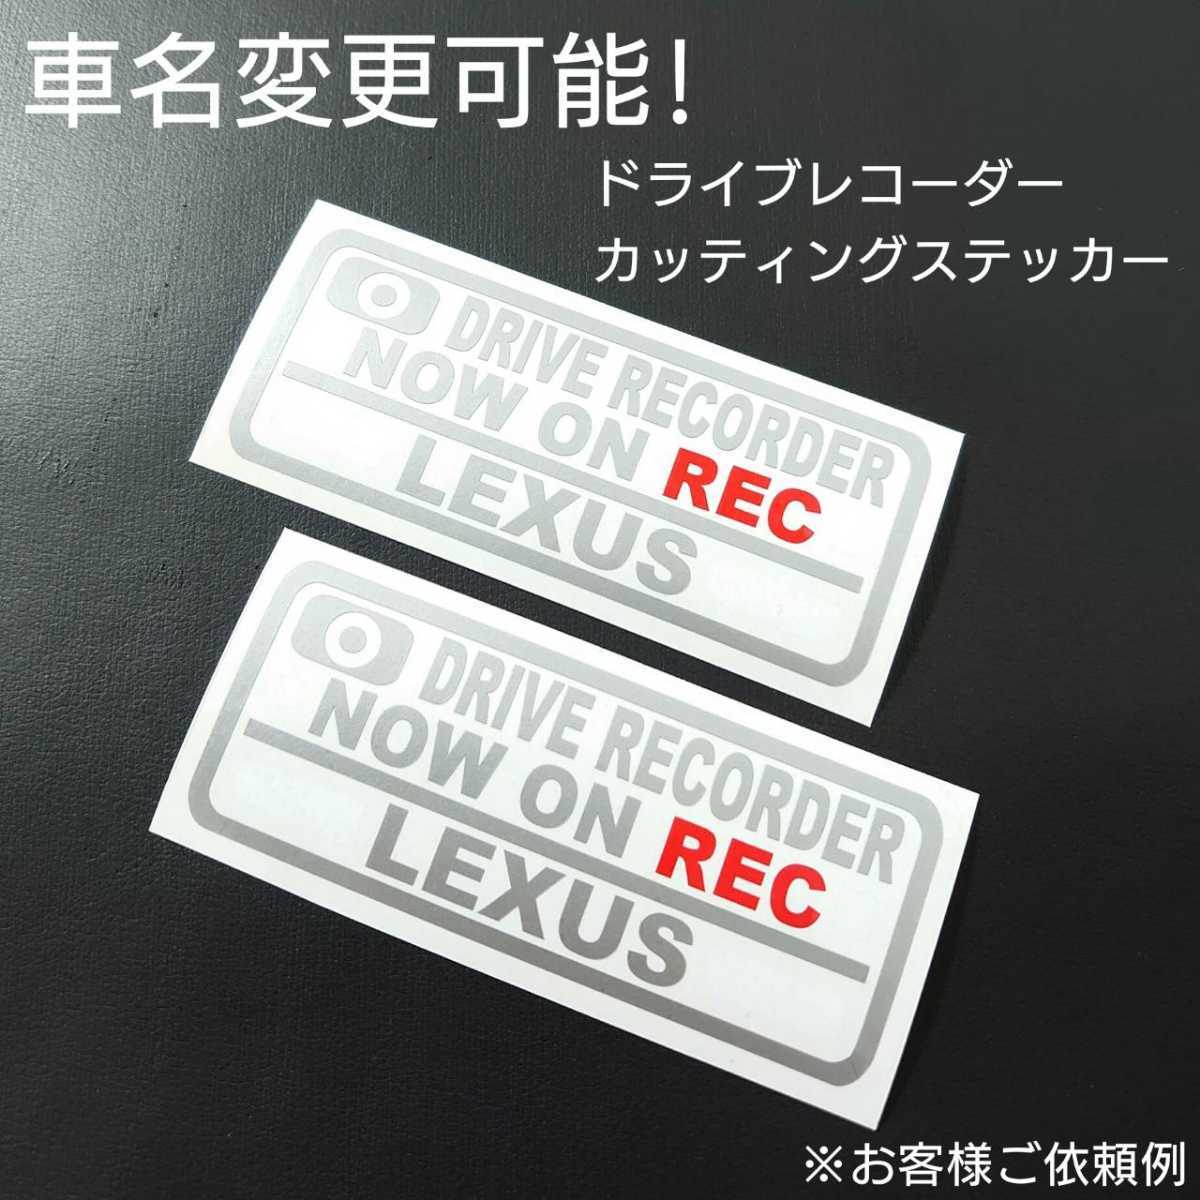 車名変更可能【ドライブレコーダー】カッティングステッカー2枚セット(LEXUS)(シルバー/レッド)_画像1